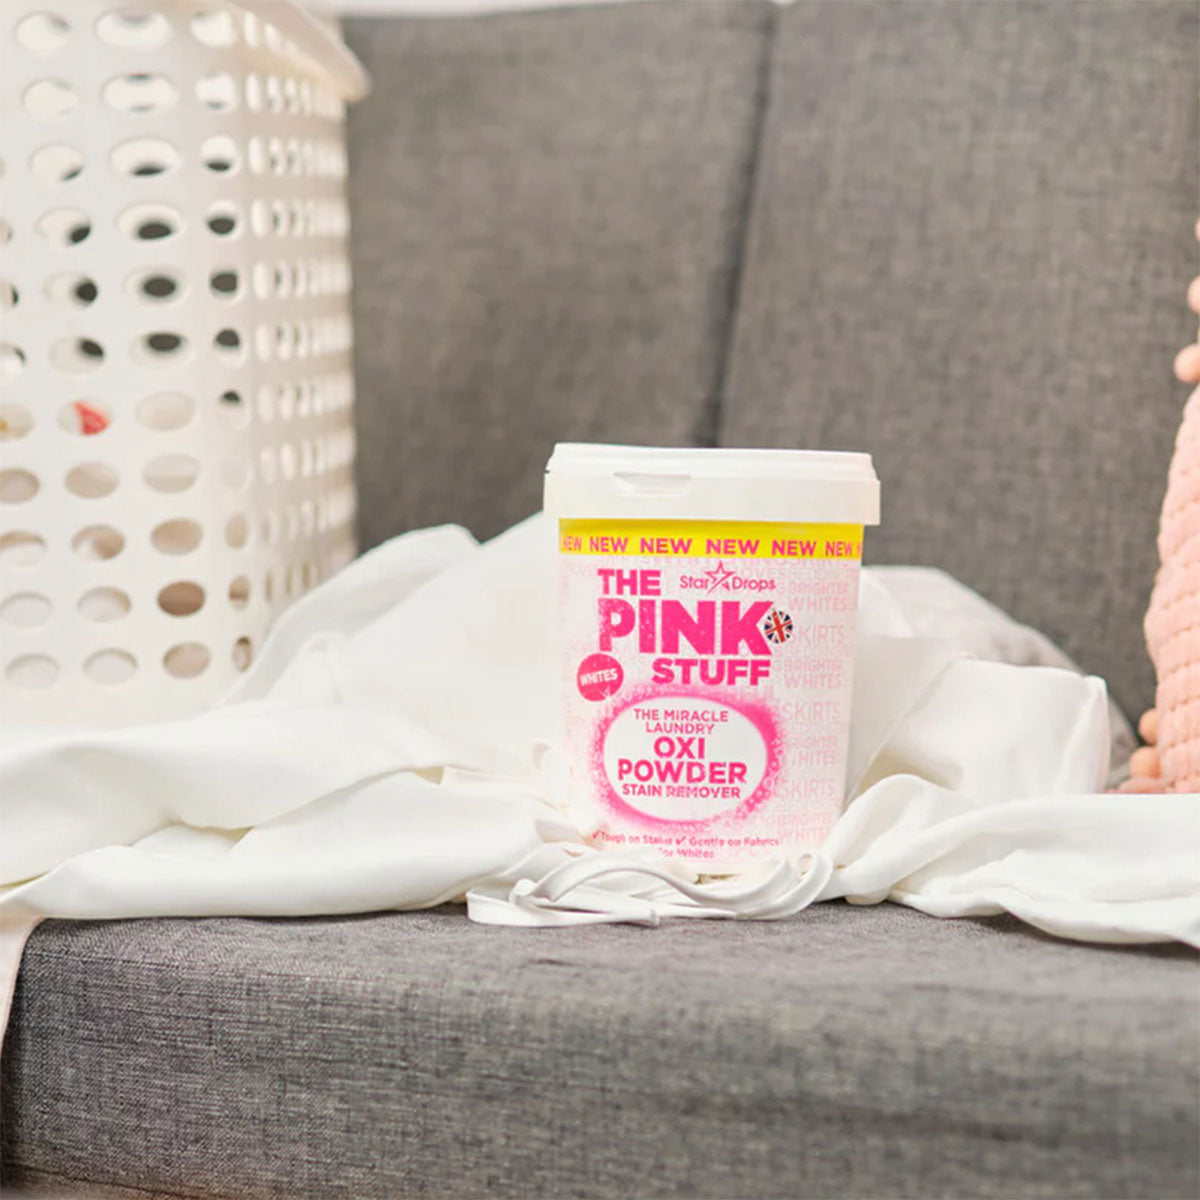 El Quitamanchas Milagroso en Polvo para Ropa Blanca OXI 1 kg The Pink Stuff - 🌱 🇬🇧 Producto Vegano del Reino Unido